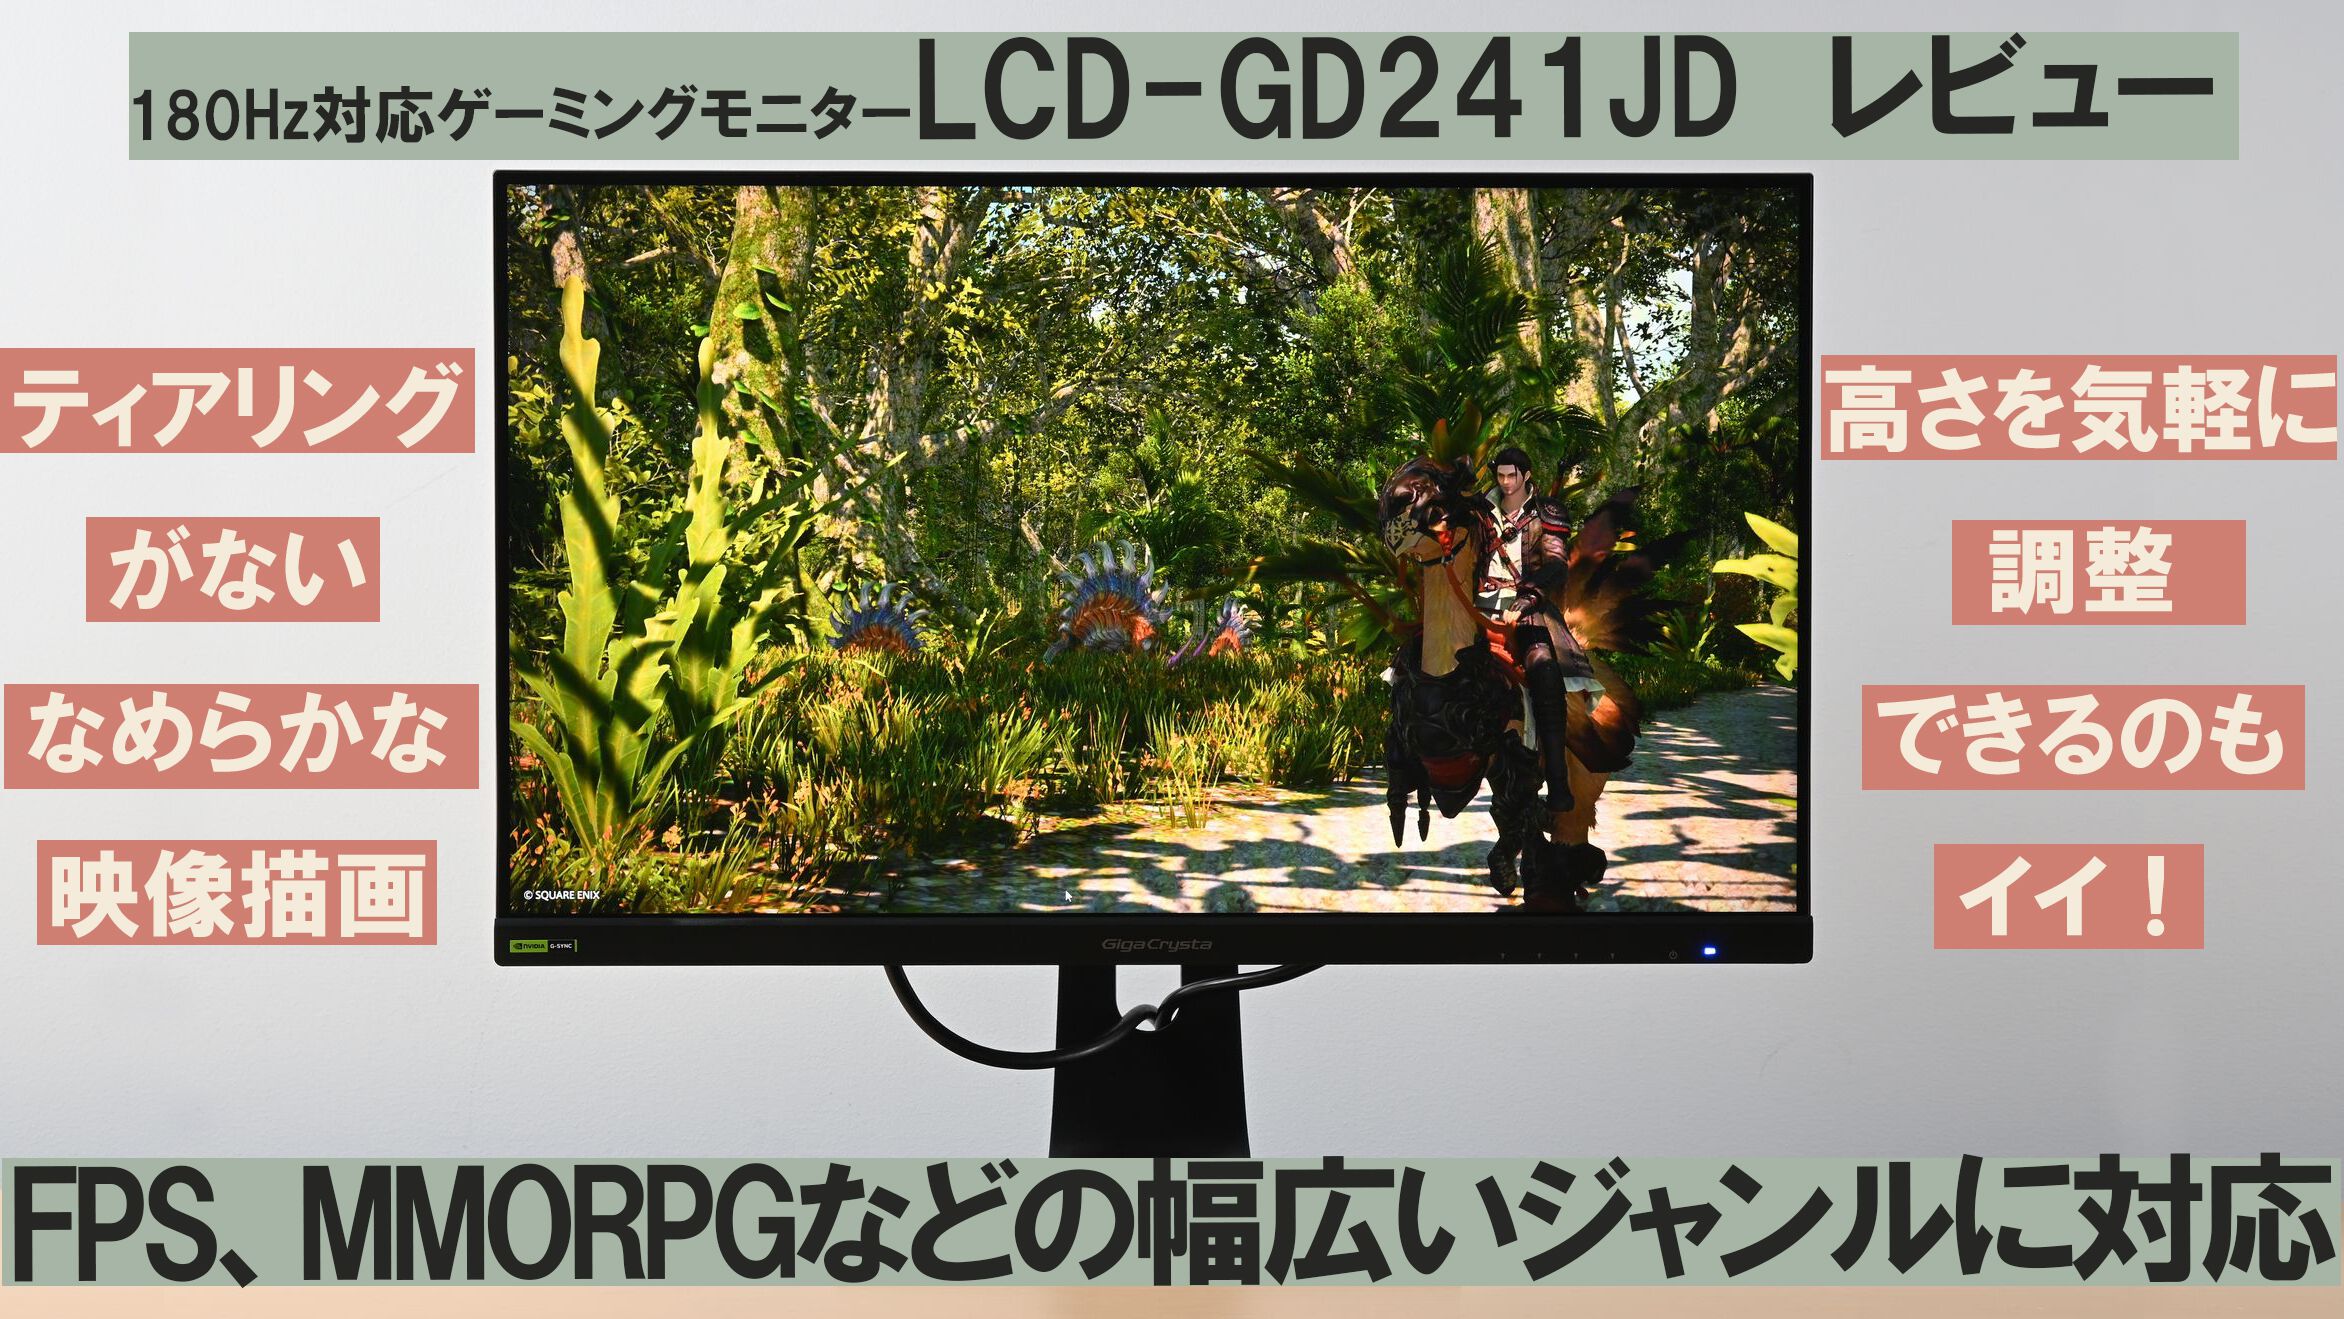 180Hz対応ゲーミングモニター“LCD-GD241JD”レビュー。多人数の描写もティアリングがないなめらかな映像に。モニターの高さも気軽に調整できるのもイイ！